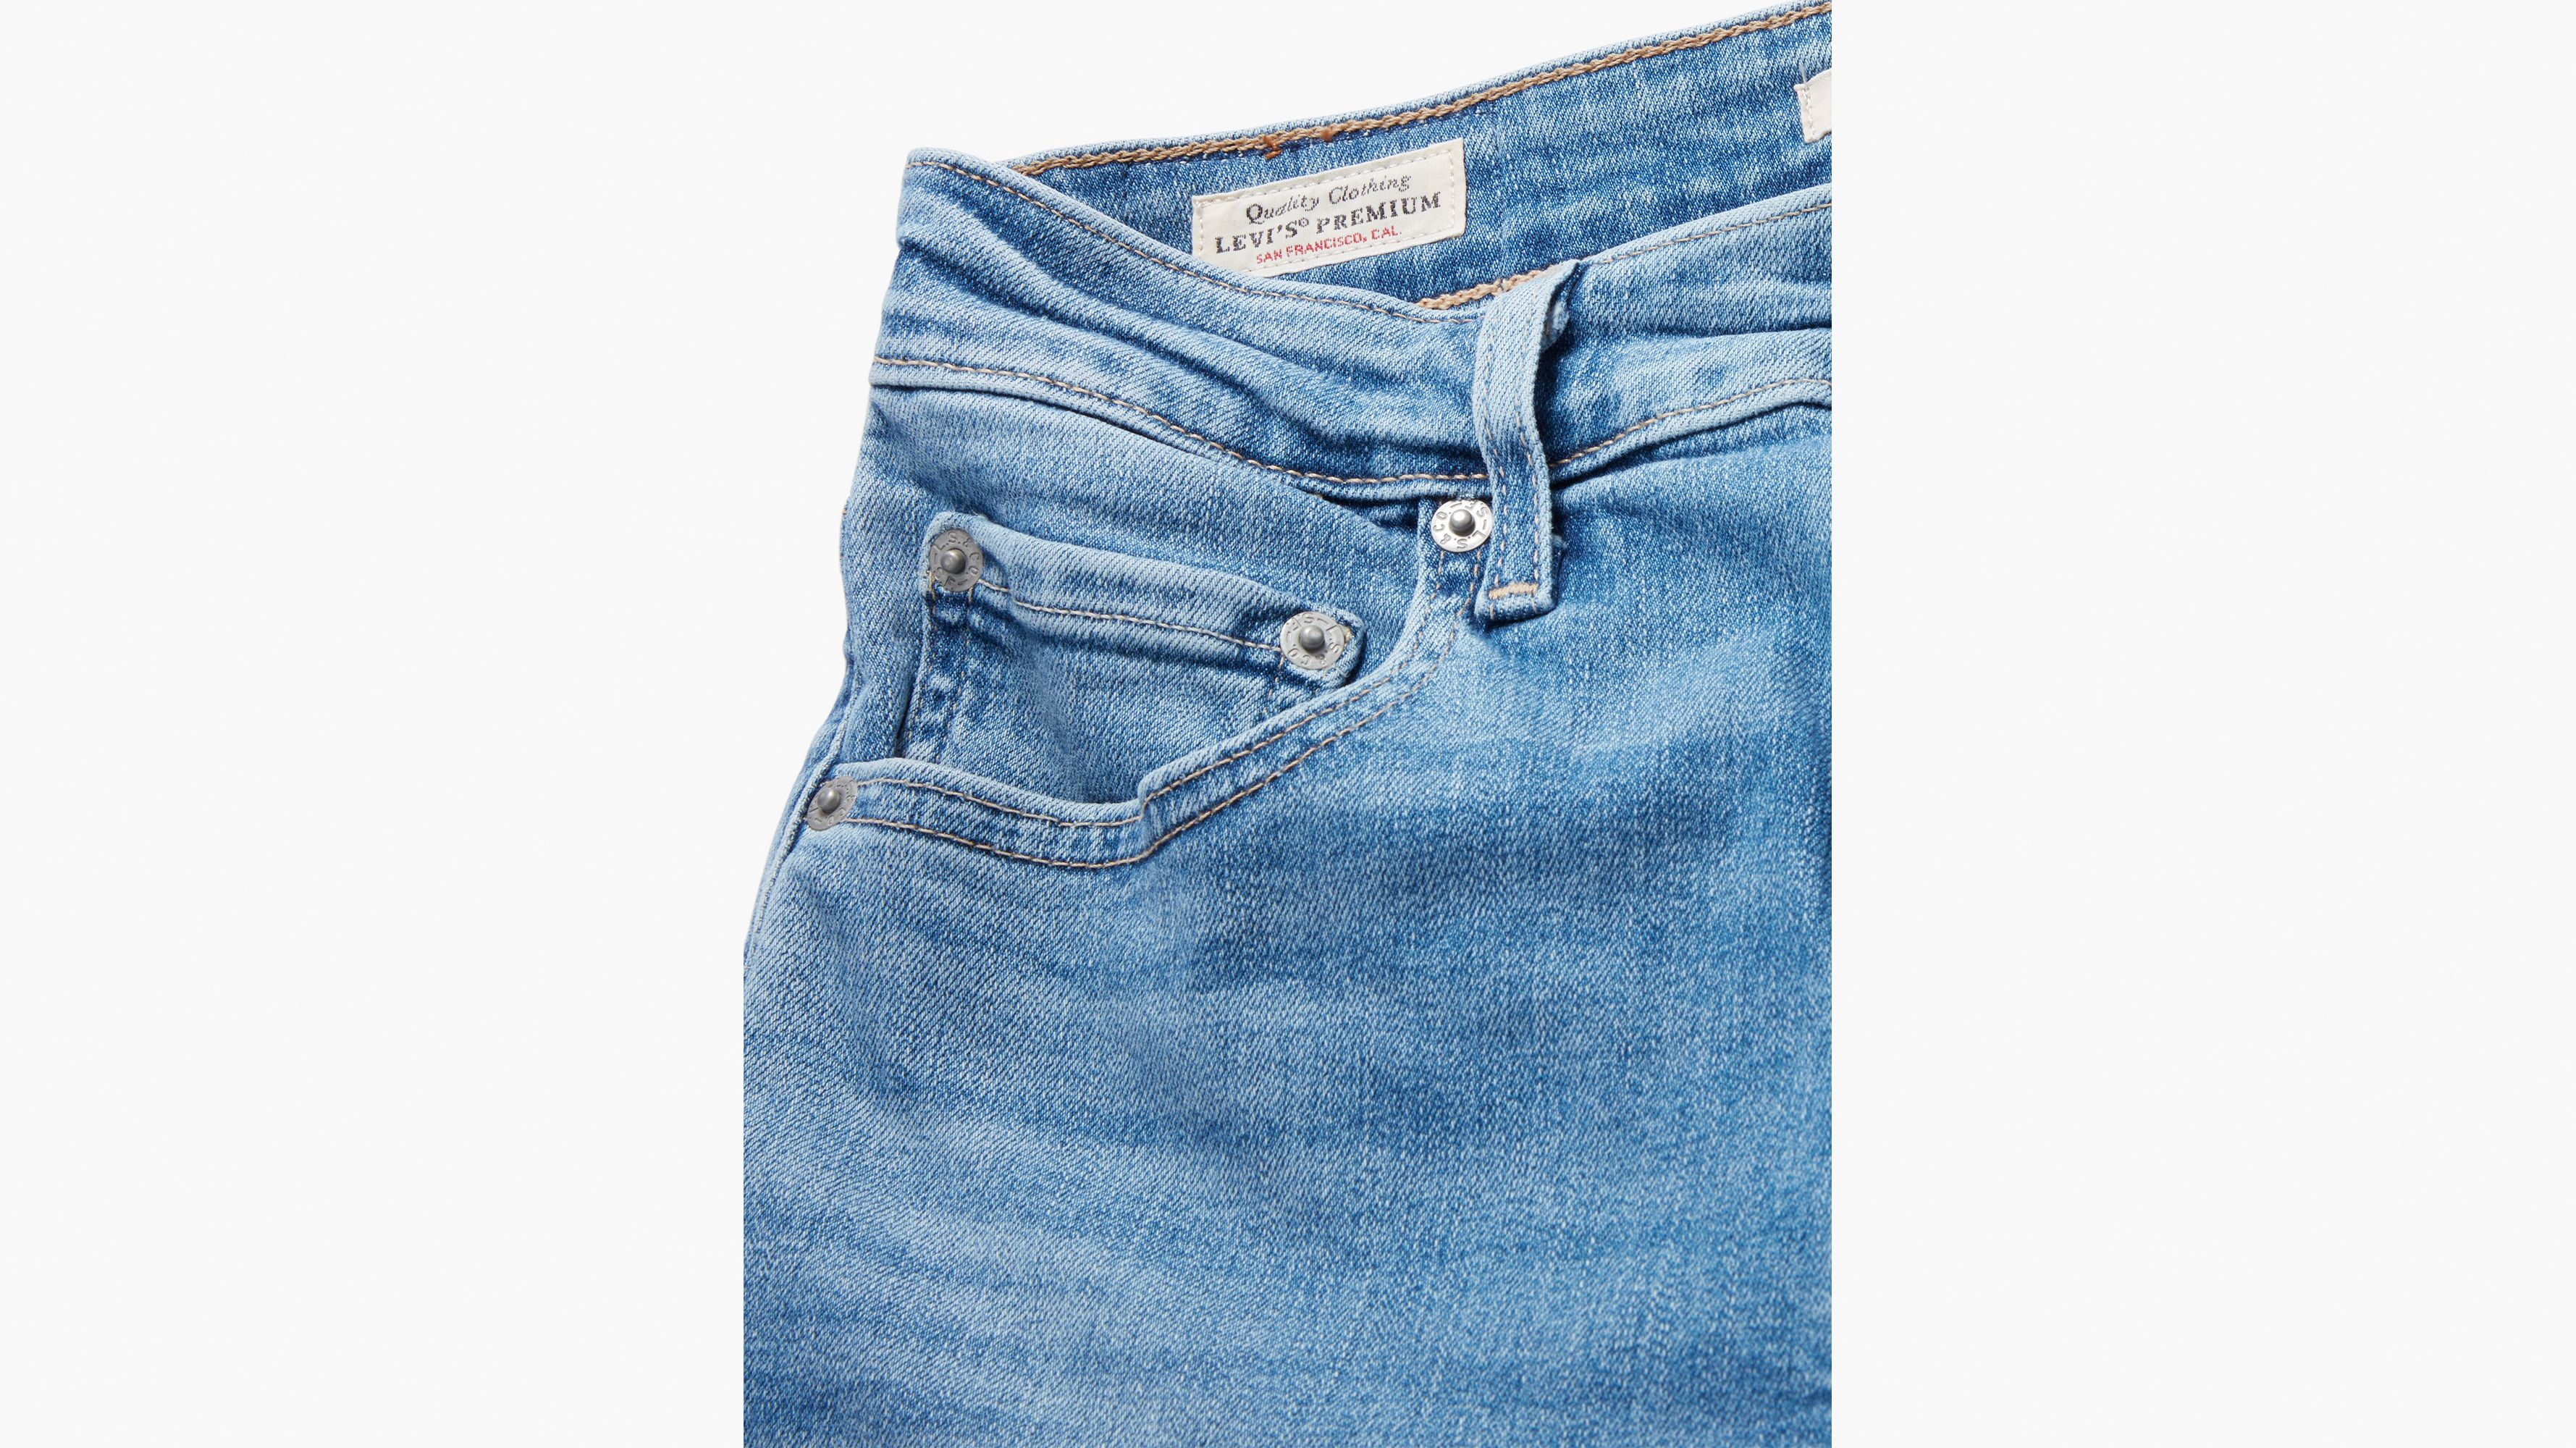 Calça Jeans Feminina High-Rise Boot Cut 725 Levi's 36291 - Rodeo West